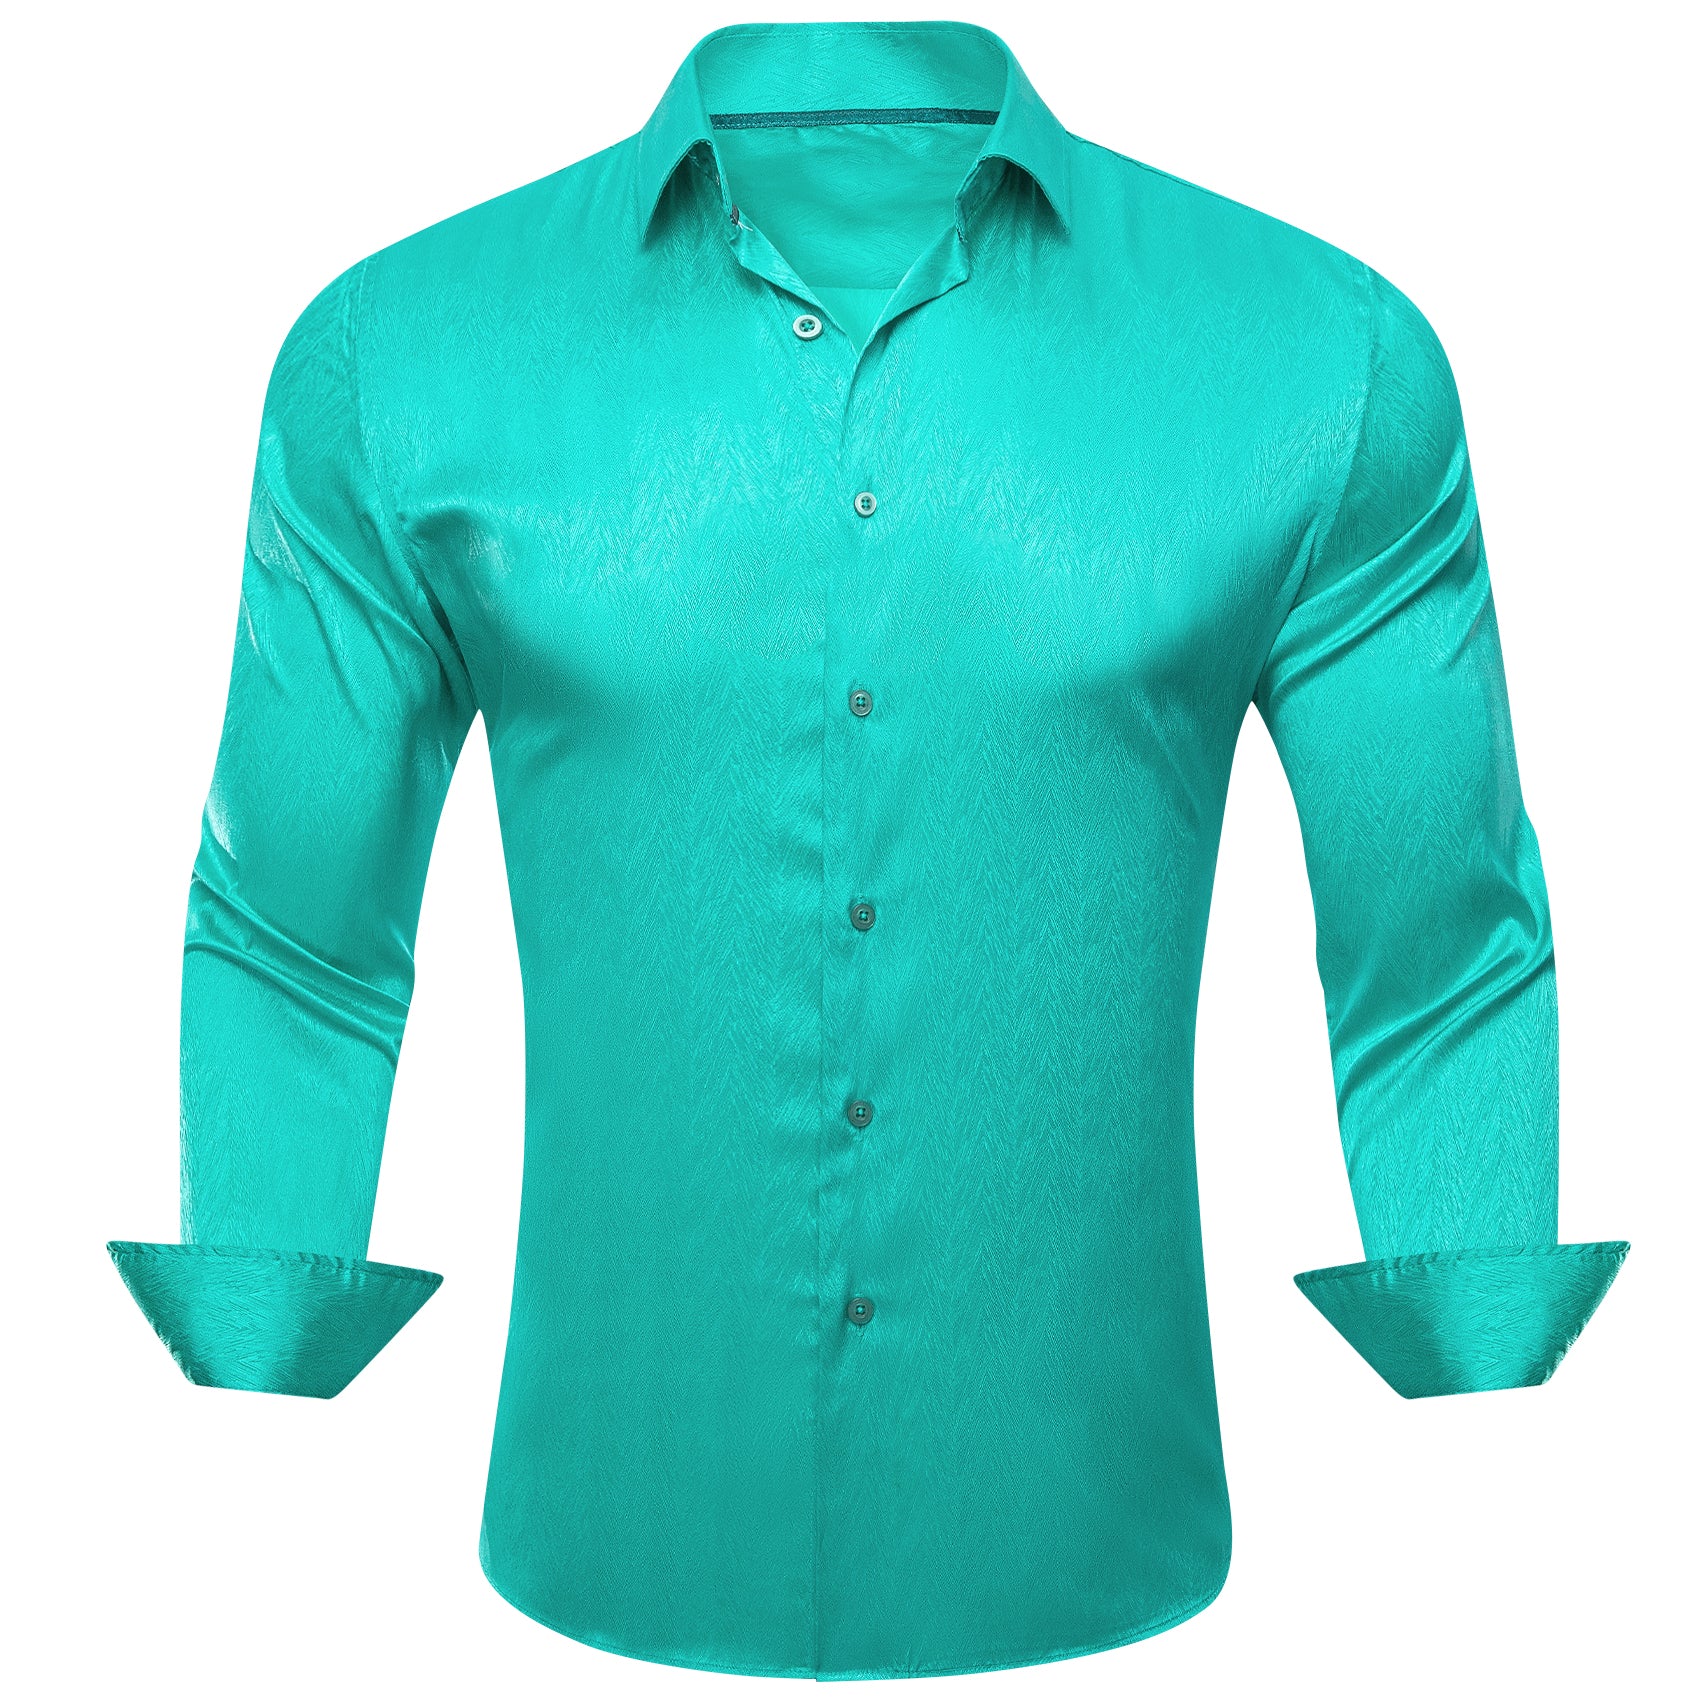 Barry.wang Aqua Solid Silk Men's Shirt